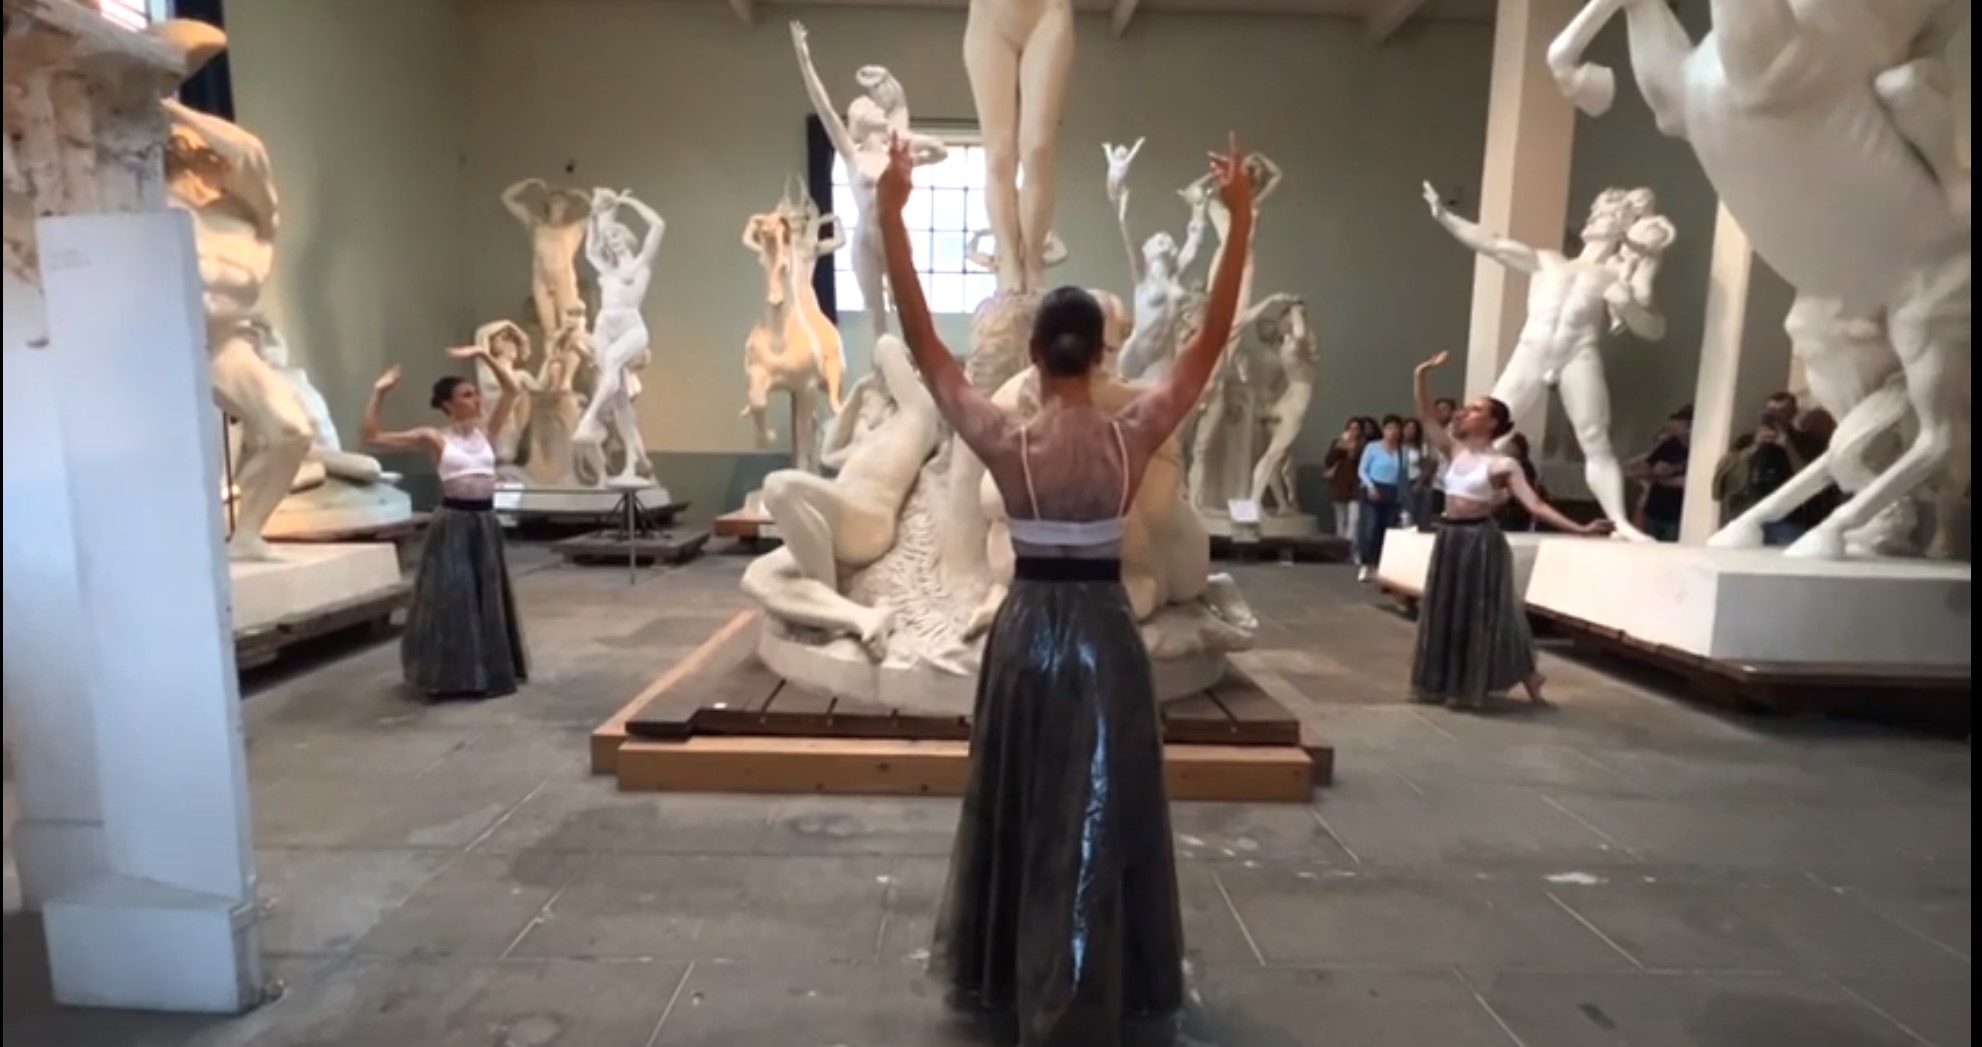 Museo Andersen - "FORME" Performance di danza contemporanea ispirata ai temi e alle forme del museo